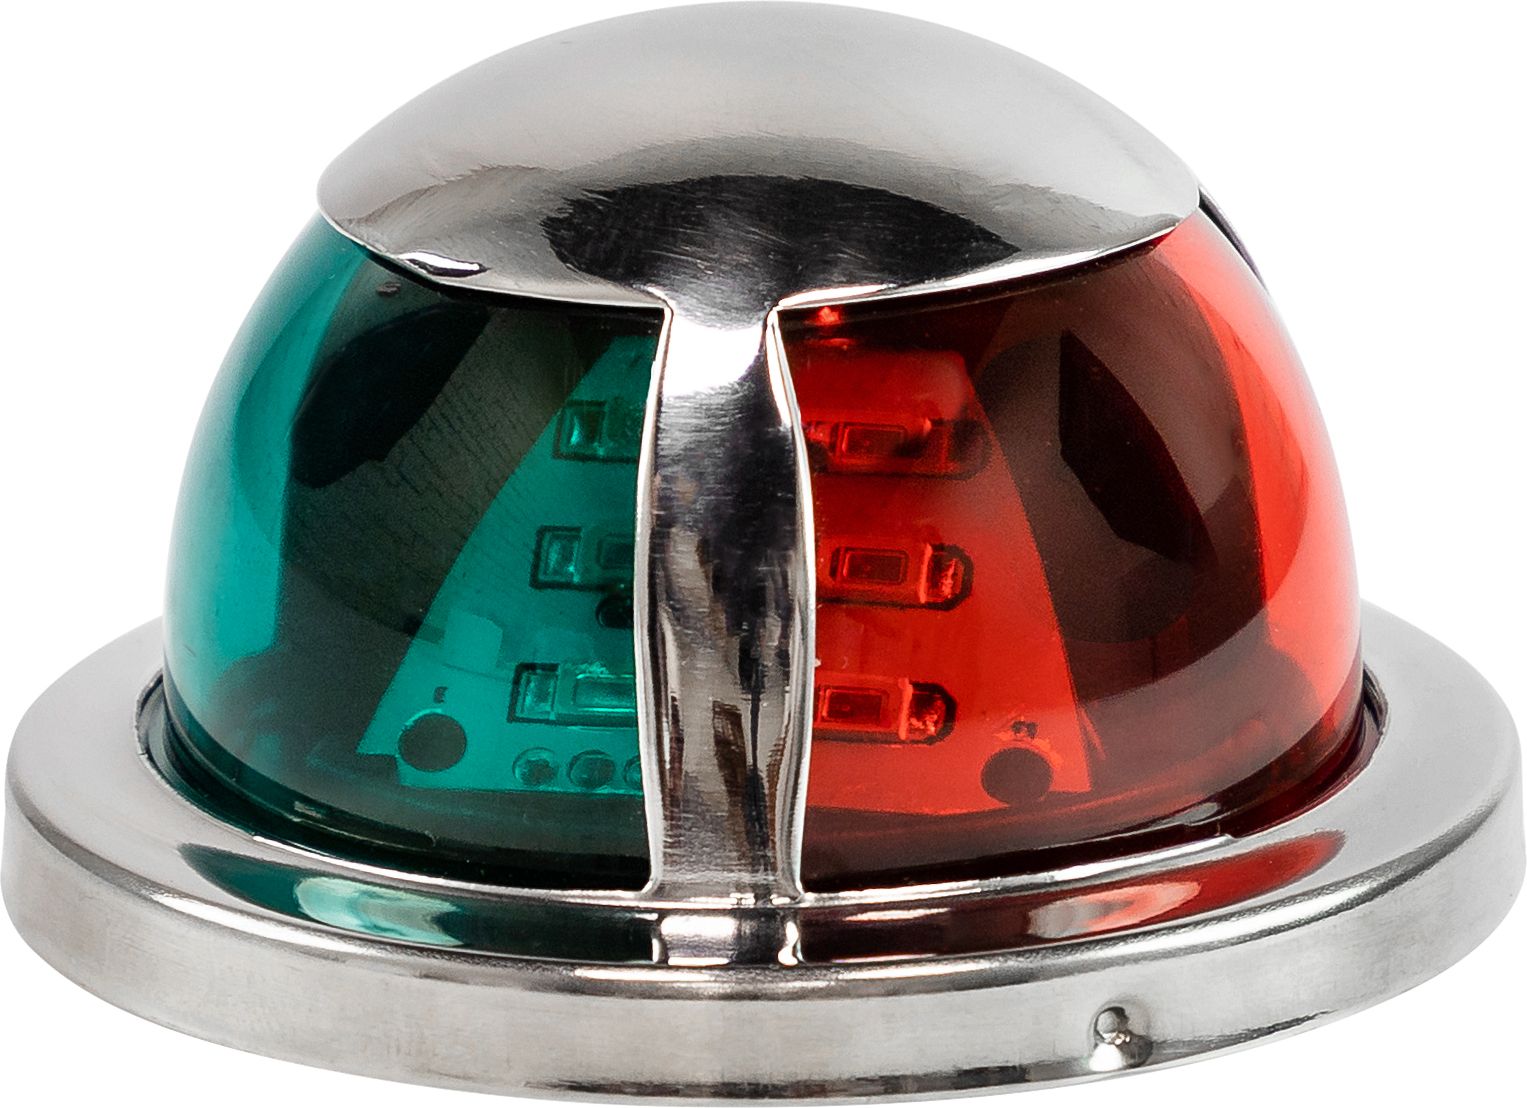 Огонь ходовой комбинированый (красный, зеленый), SS304, 12-24 В, LED LPNVGCBLED00543